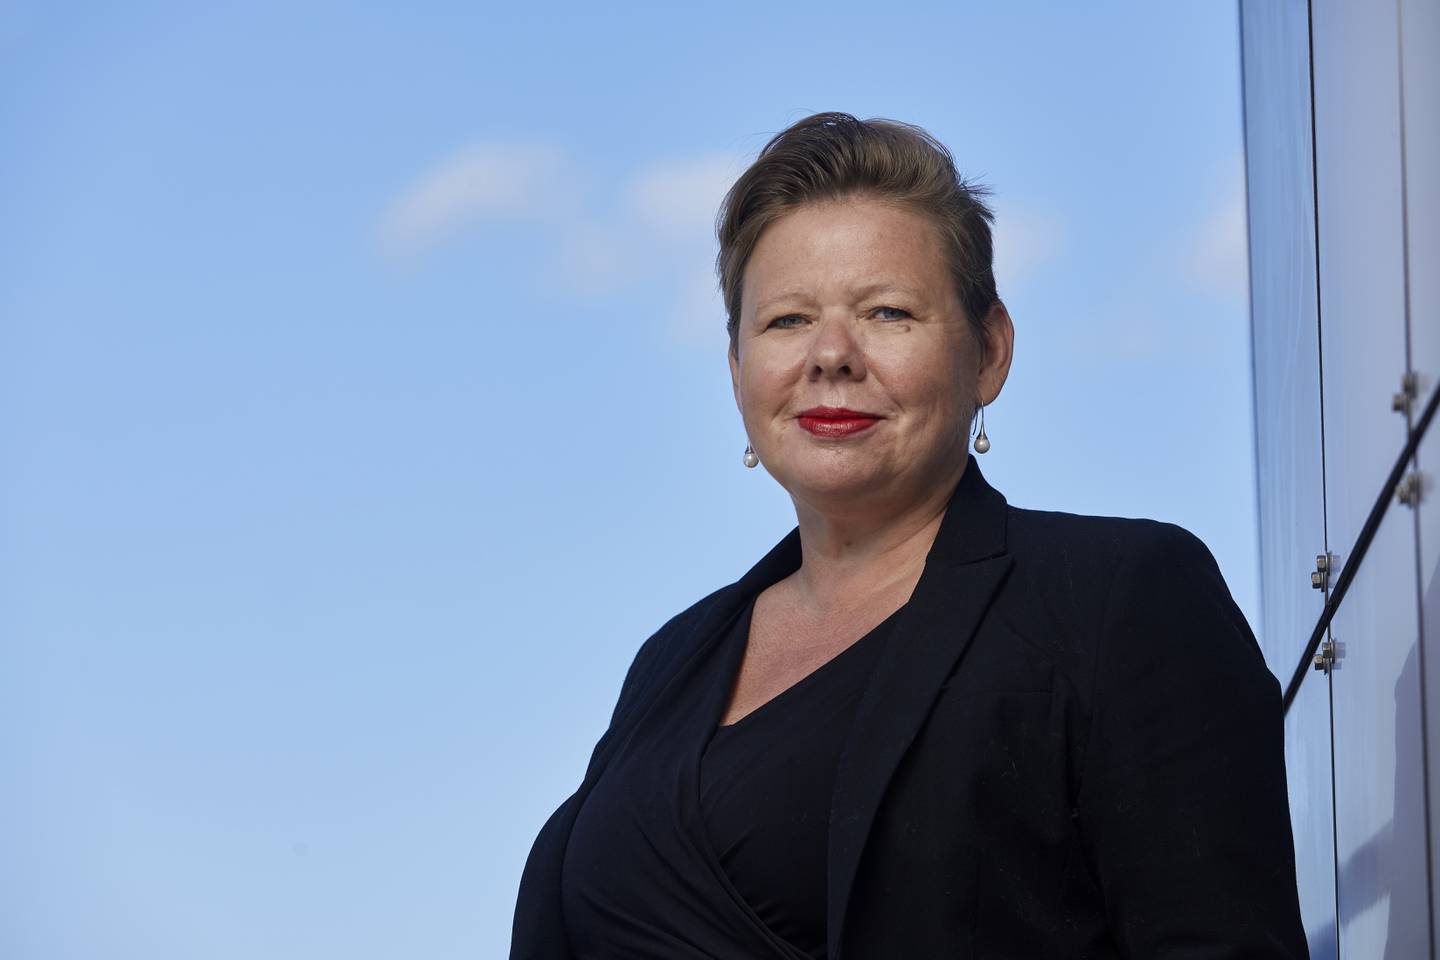 Oppløsningen av Viken fylke er en av sakene den nye fylkesrådslederen, Siv Henriette Jacobsen, har fått i fanget.